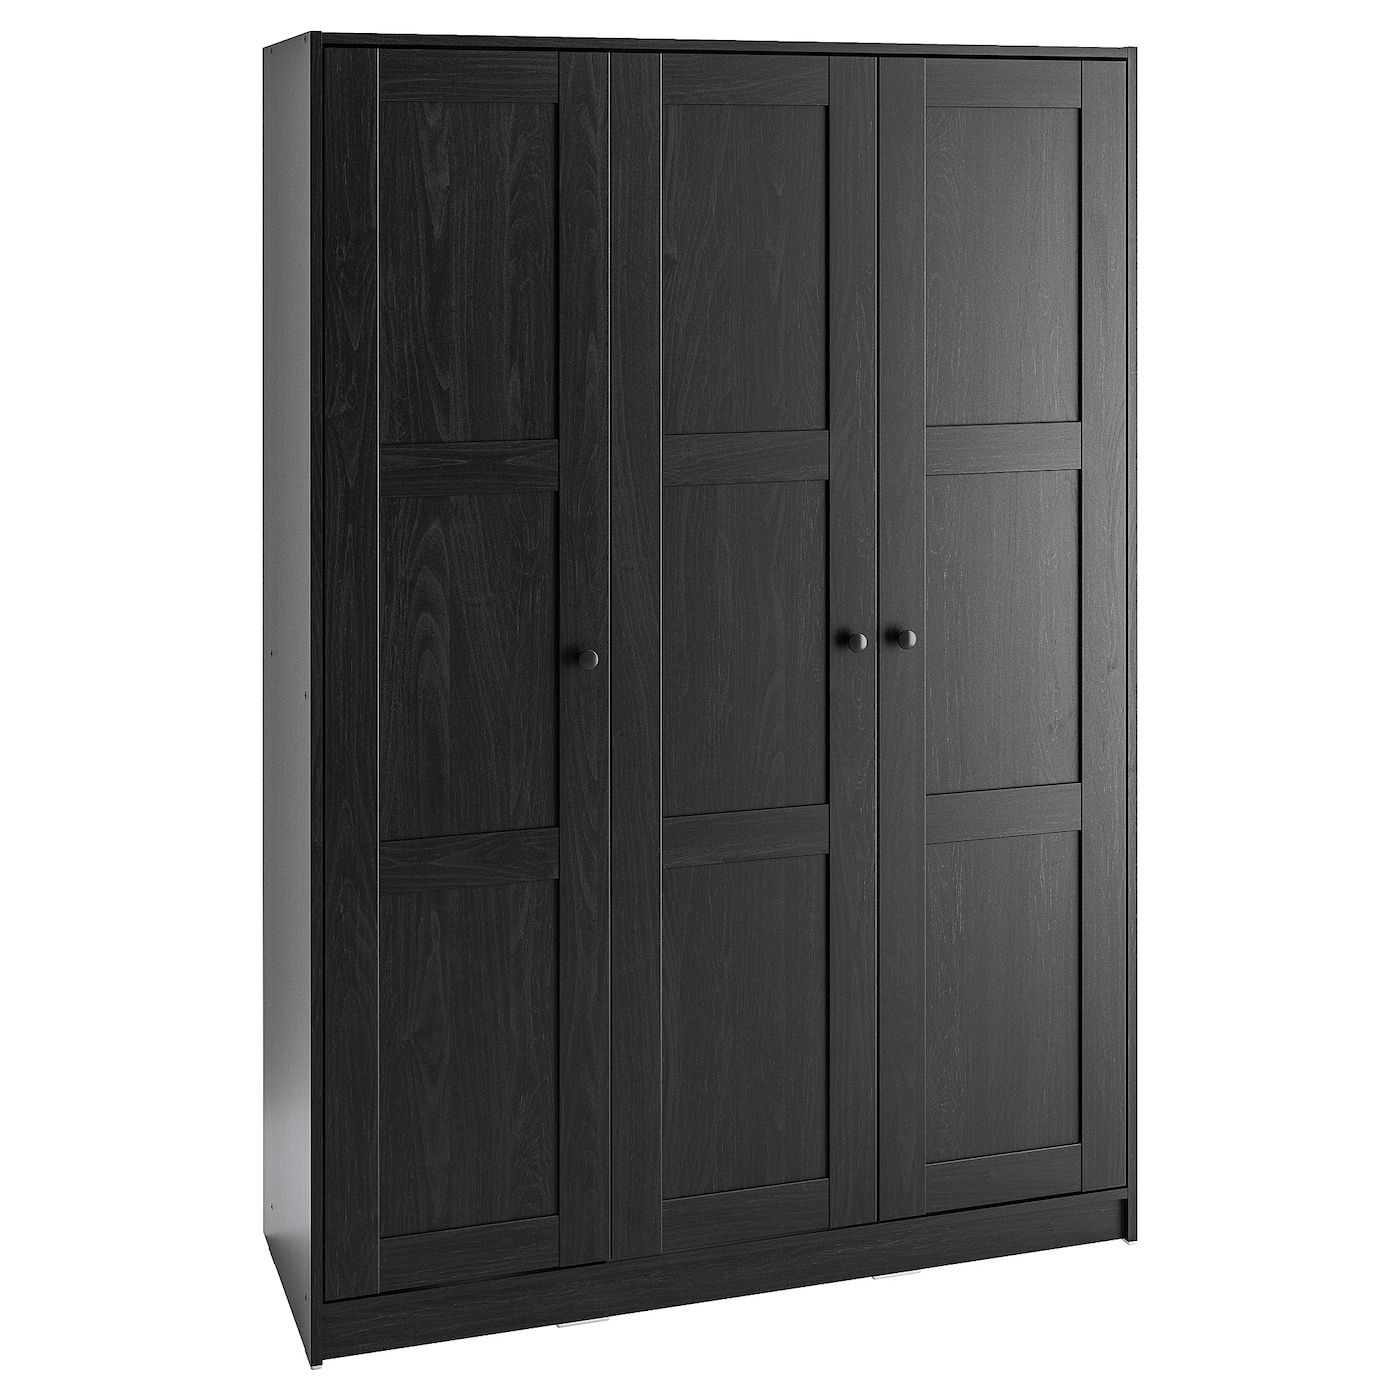 Rakkestad Wardrobe With 3 Doors, Black Brown, 117x176 Cm – Ikea With 3 Door Black Wardrobes (Gallery 4 of 20)